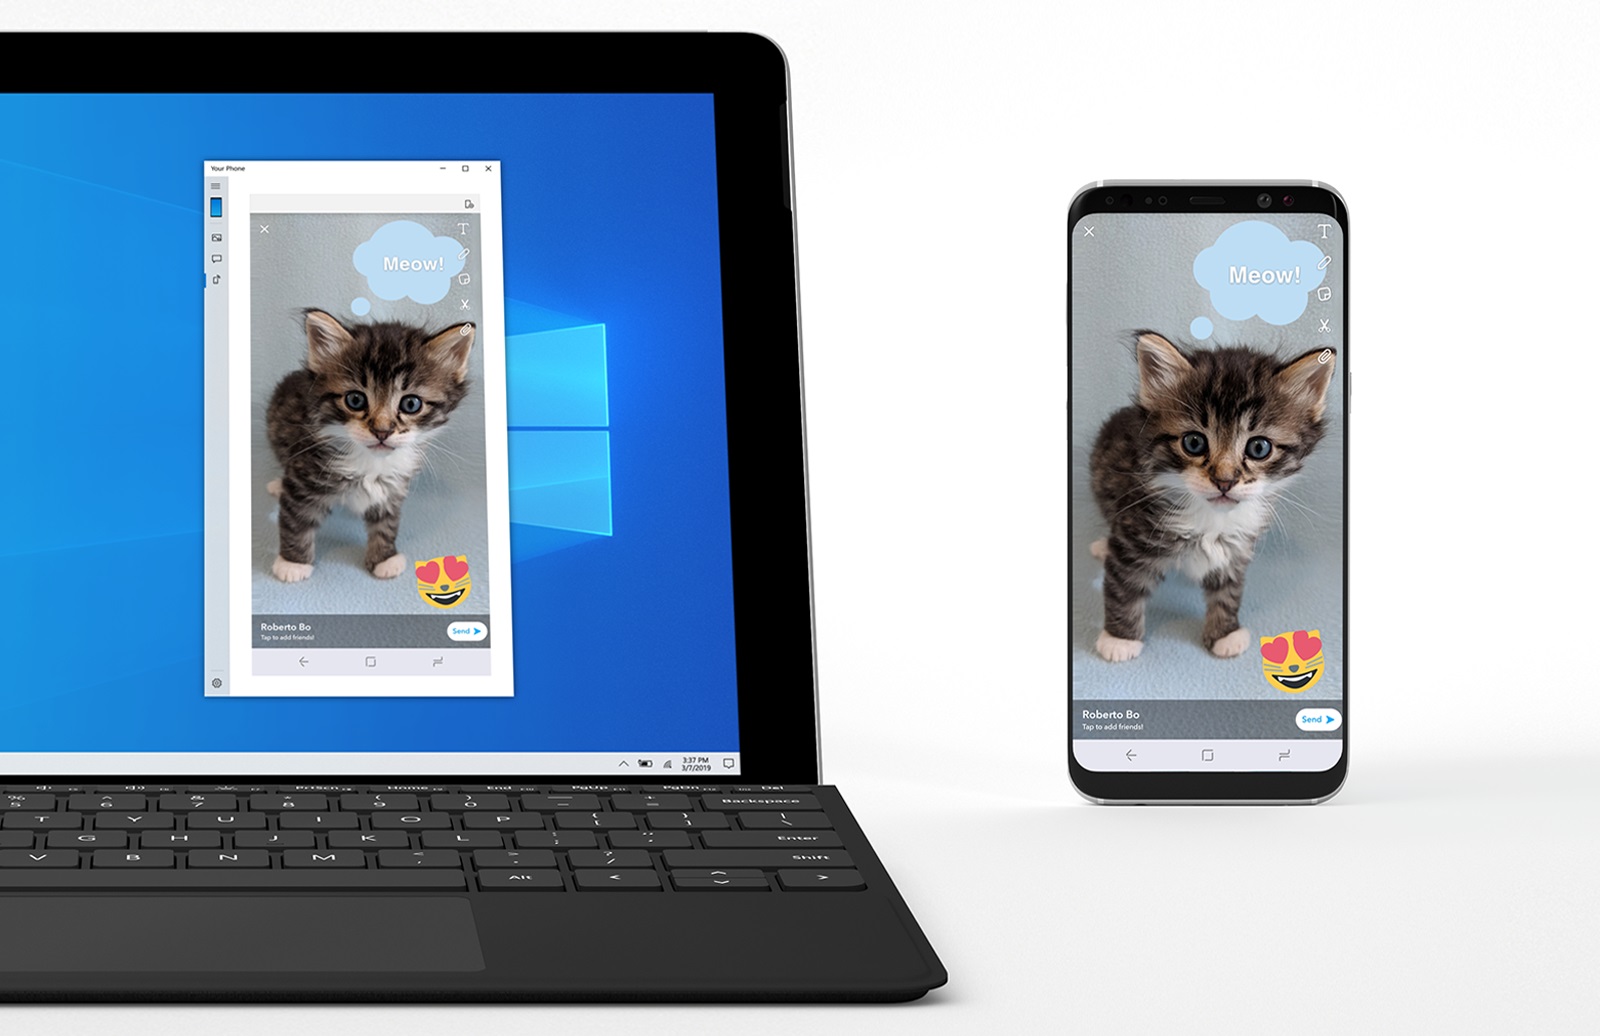 Prévia do Windows 10 espelha tela de celulares Android no computador